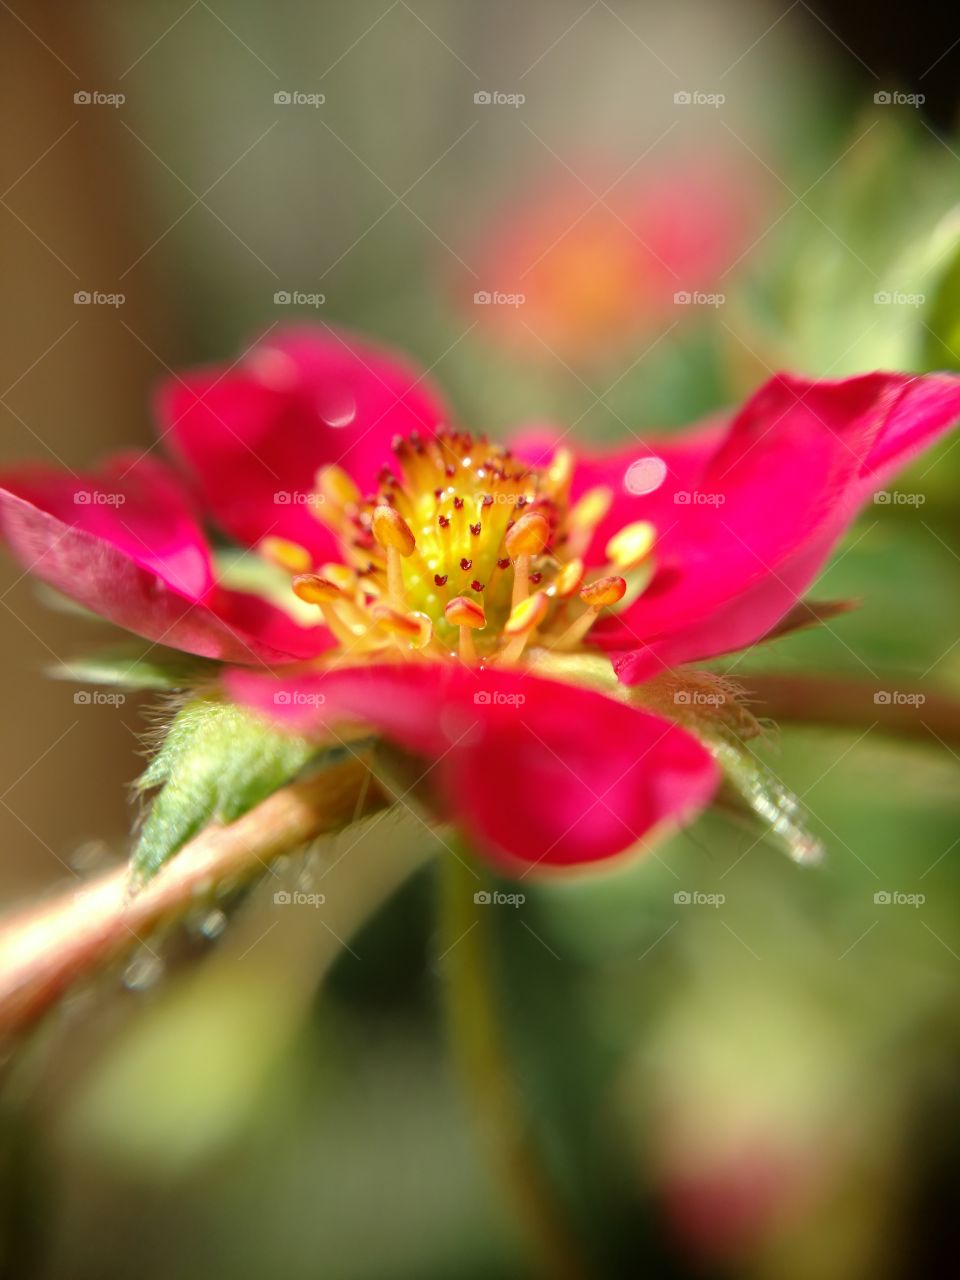 strawberry blossom